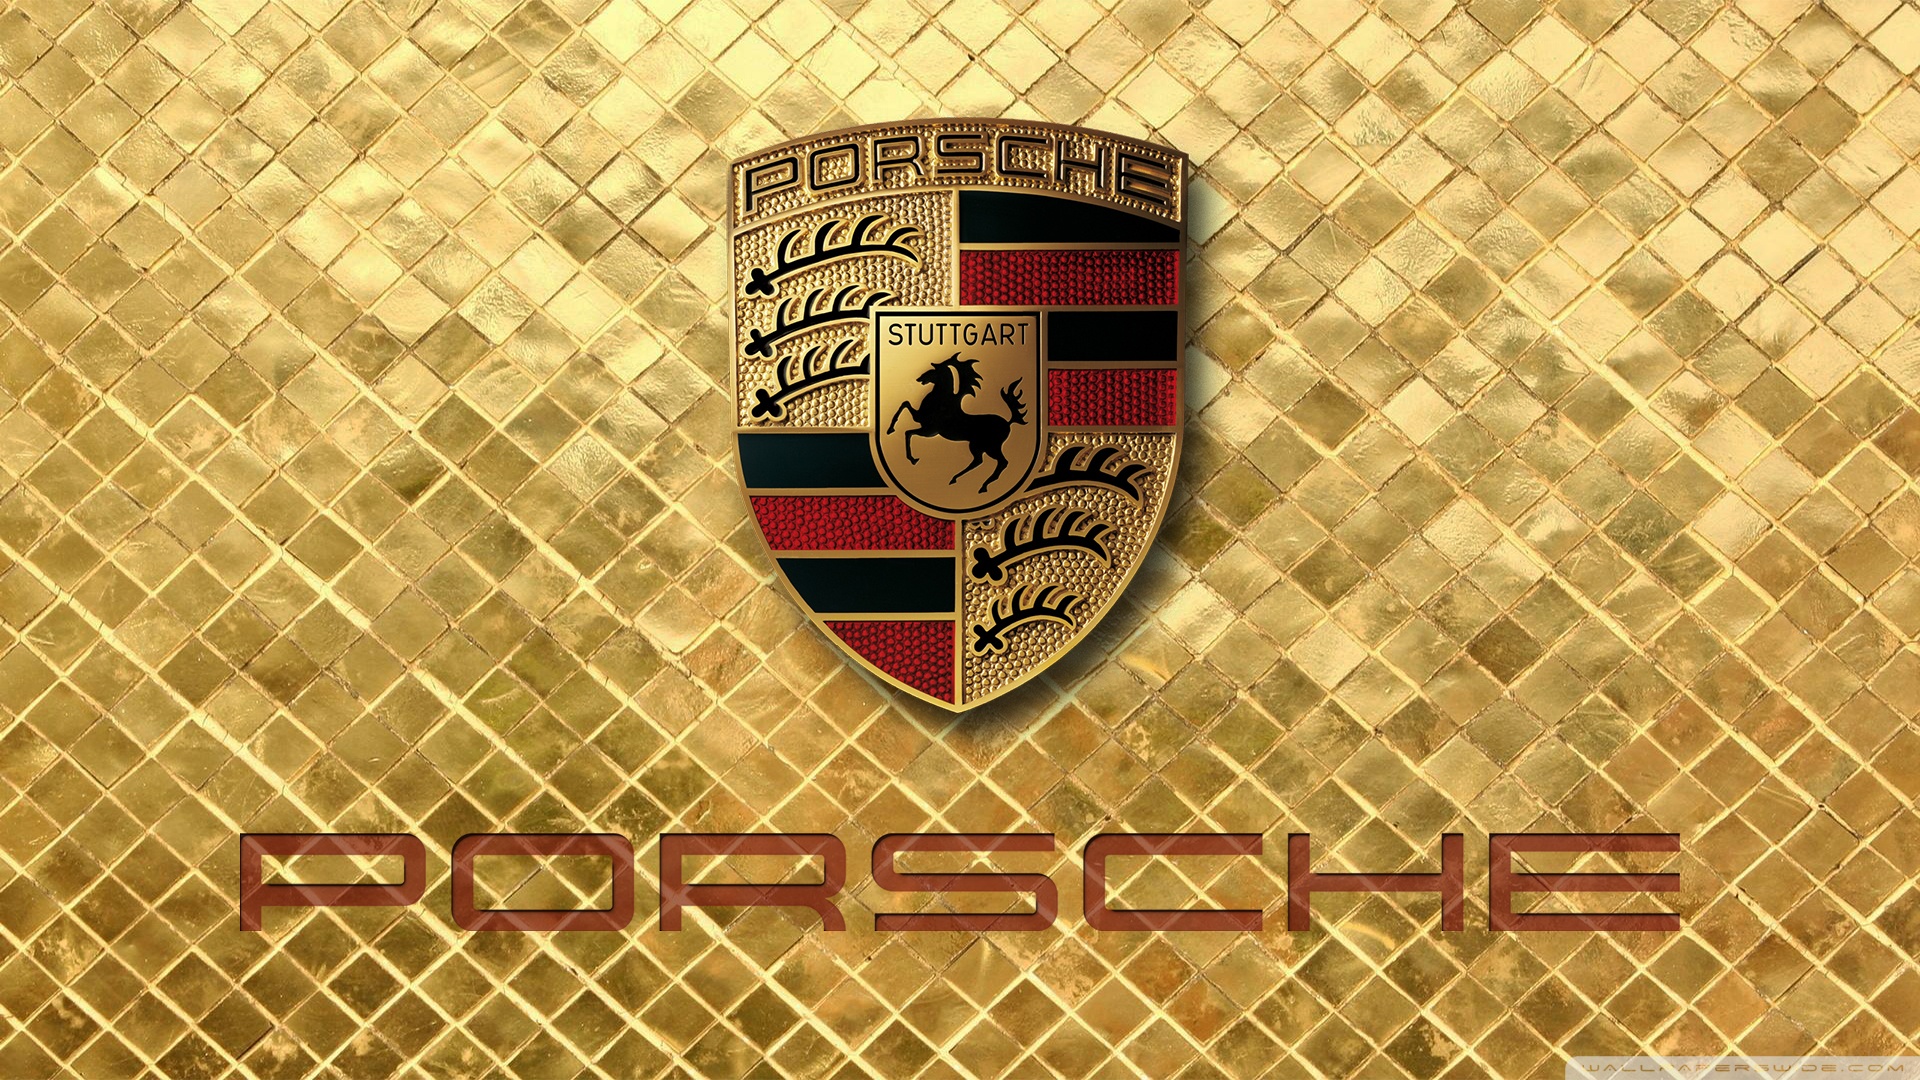 Porsche Wallpaper Ultra Hd Desktop Background Wallpaper For 4k Uhd Tv Widescreen Ultrawide Desktop Laptop Tablet Smartphone